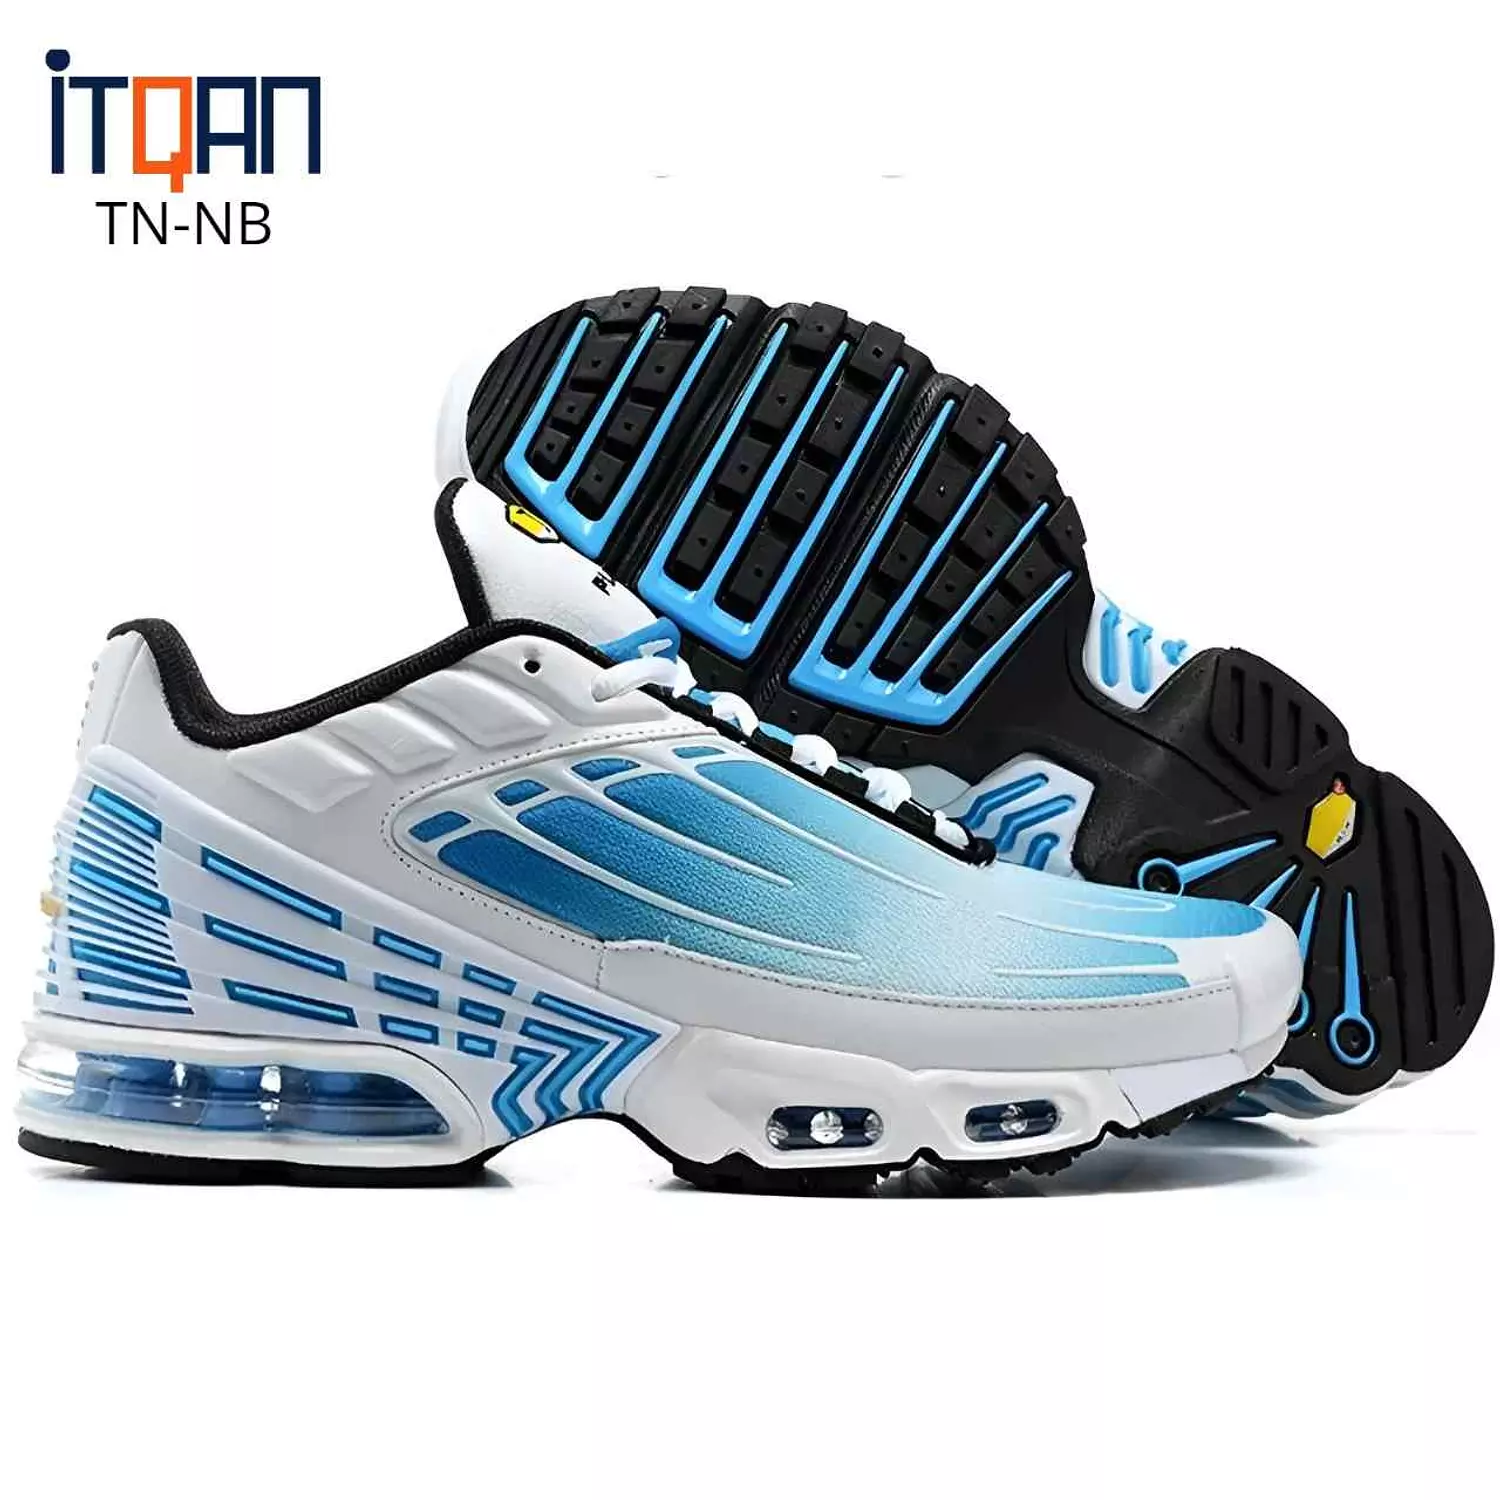 Nike TN Plus 3 1